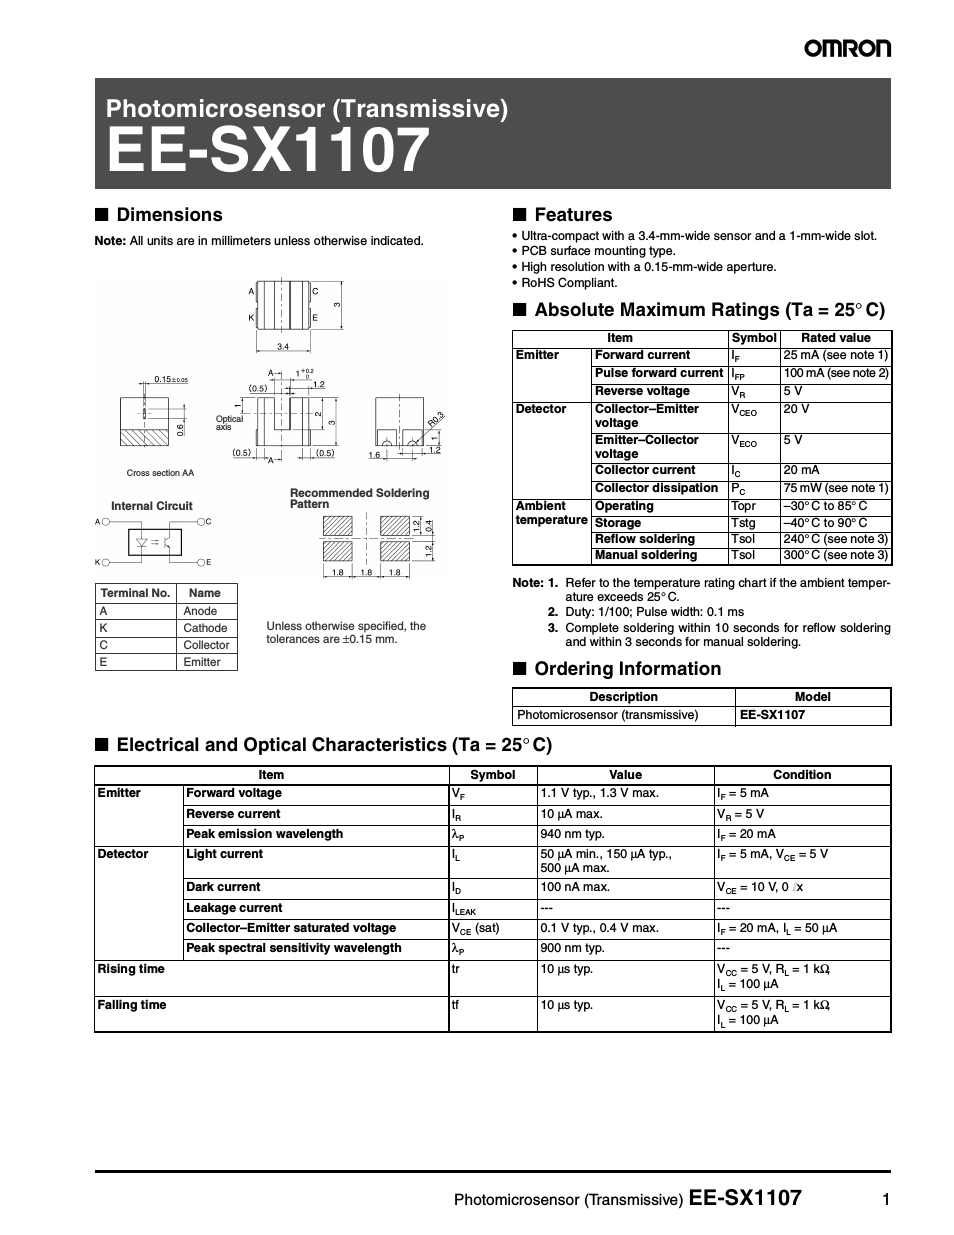 Photomicrosensor (Transmissive) EE-SX1107